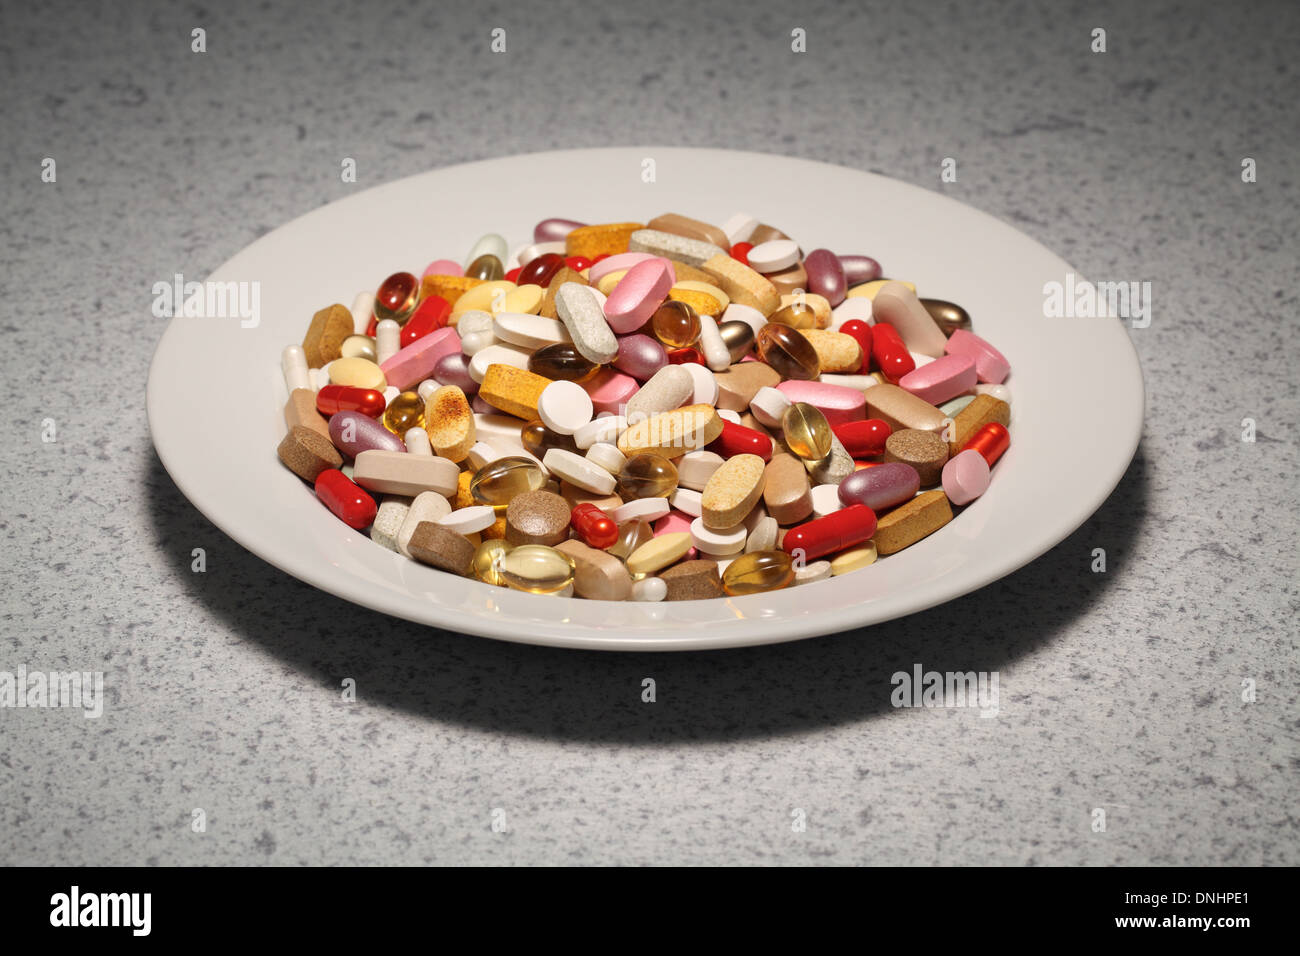 Un piatto rotondo riempito di miste di supplementi di vitamina- pillole, compresse e capsule. Foto Stock